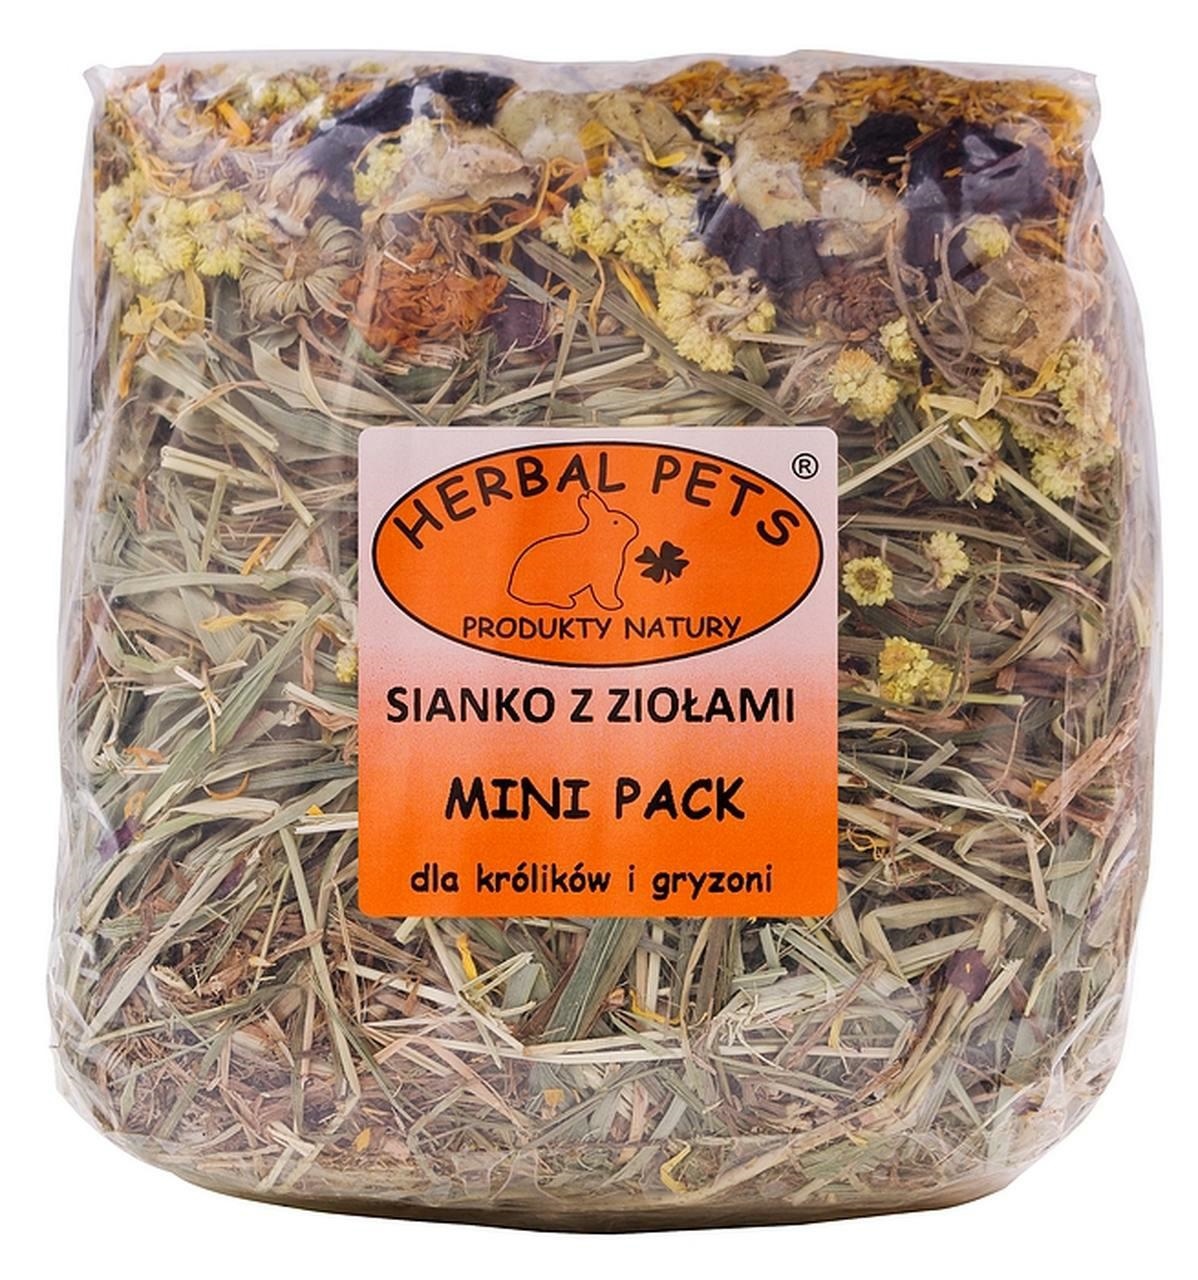 Herbal Pets Sianko z ziołami mini pack dla królików i gryzoni 300g